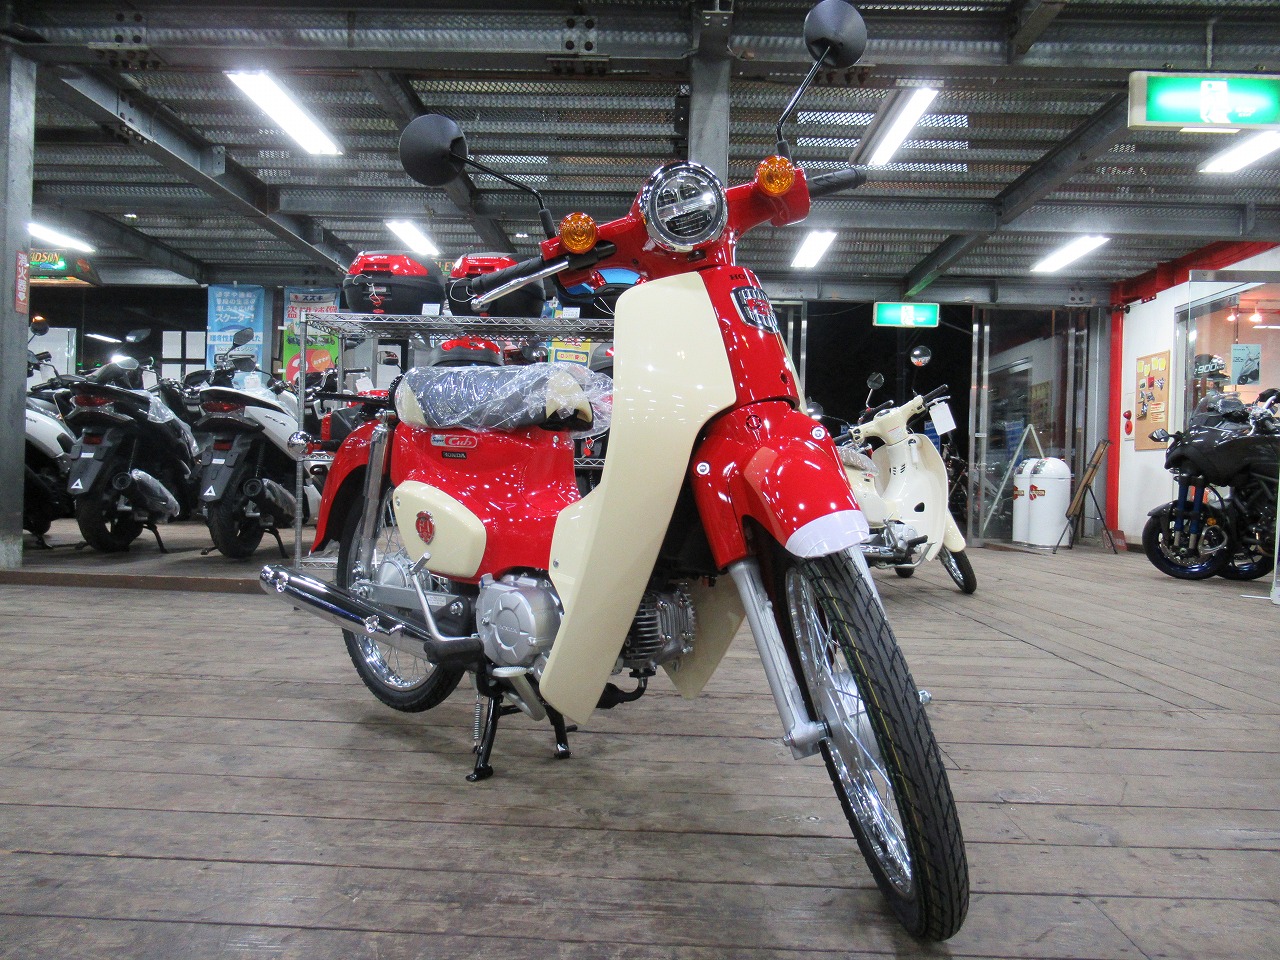 スーパーカブ50 60周年アニバーサリーカラー入荷しました 最新情報 U Media ユーメディア 中古 バイク 新車バイク探しの決定版 神奈川 東京でバイク探すならユーメディア